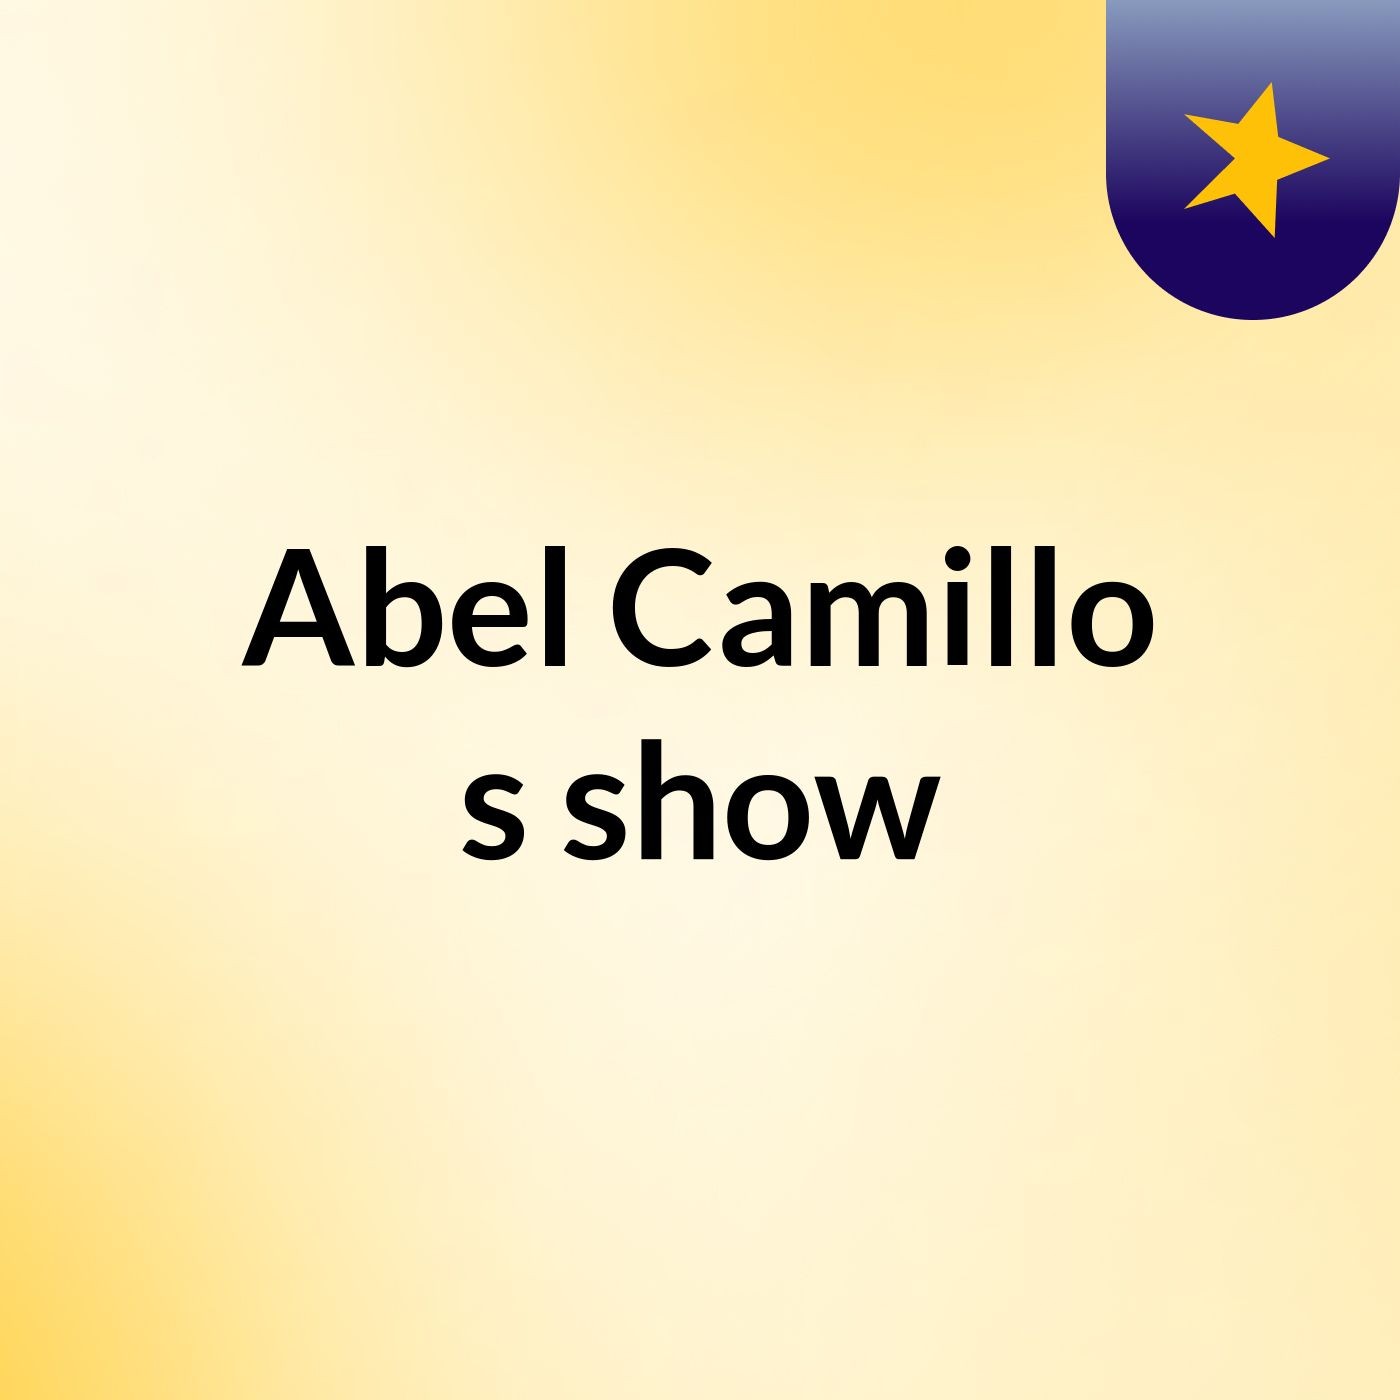 Abel Camillo's show